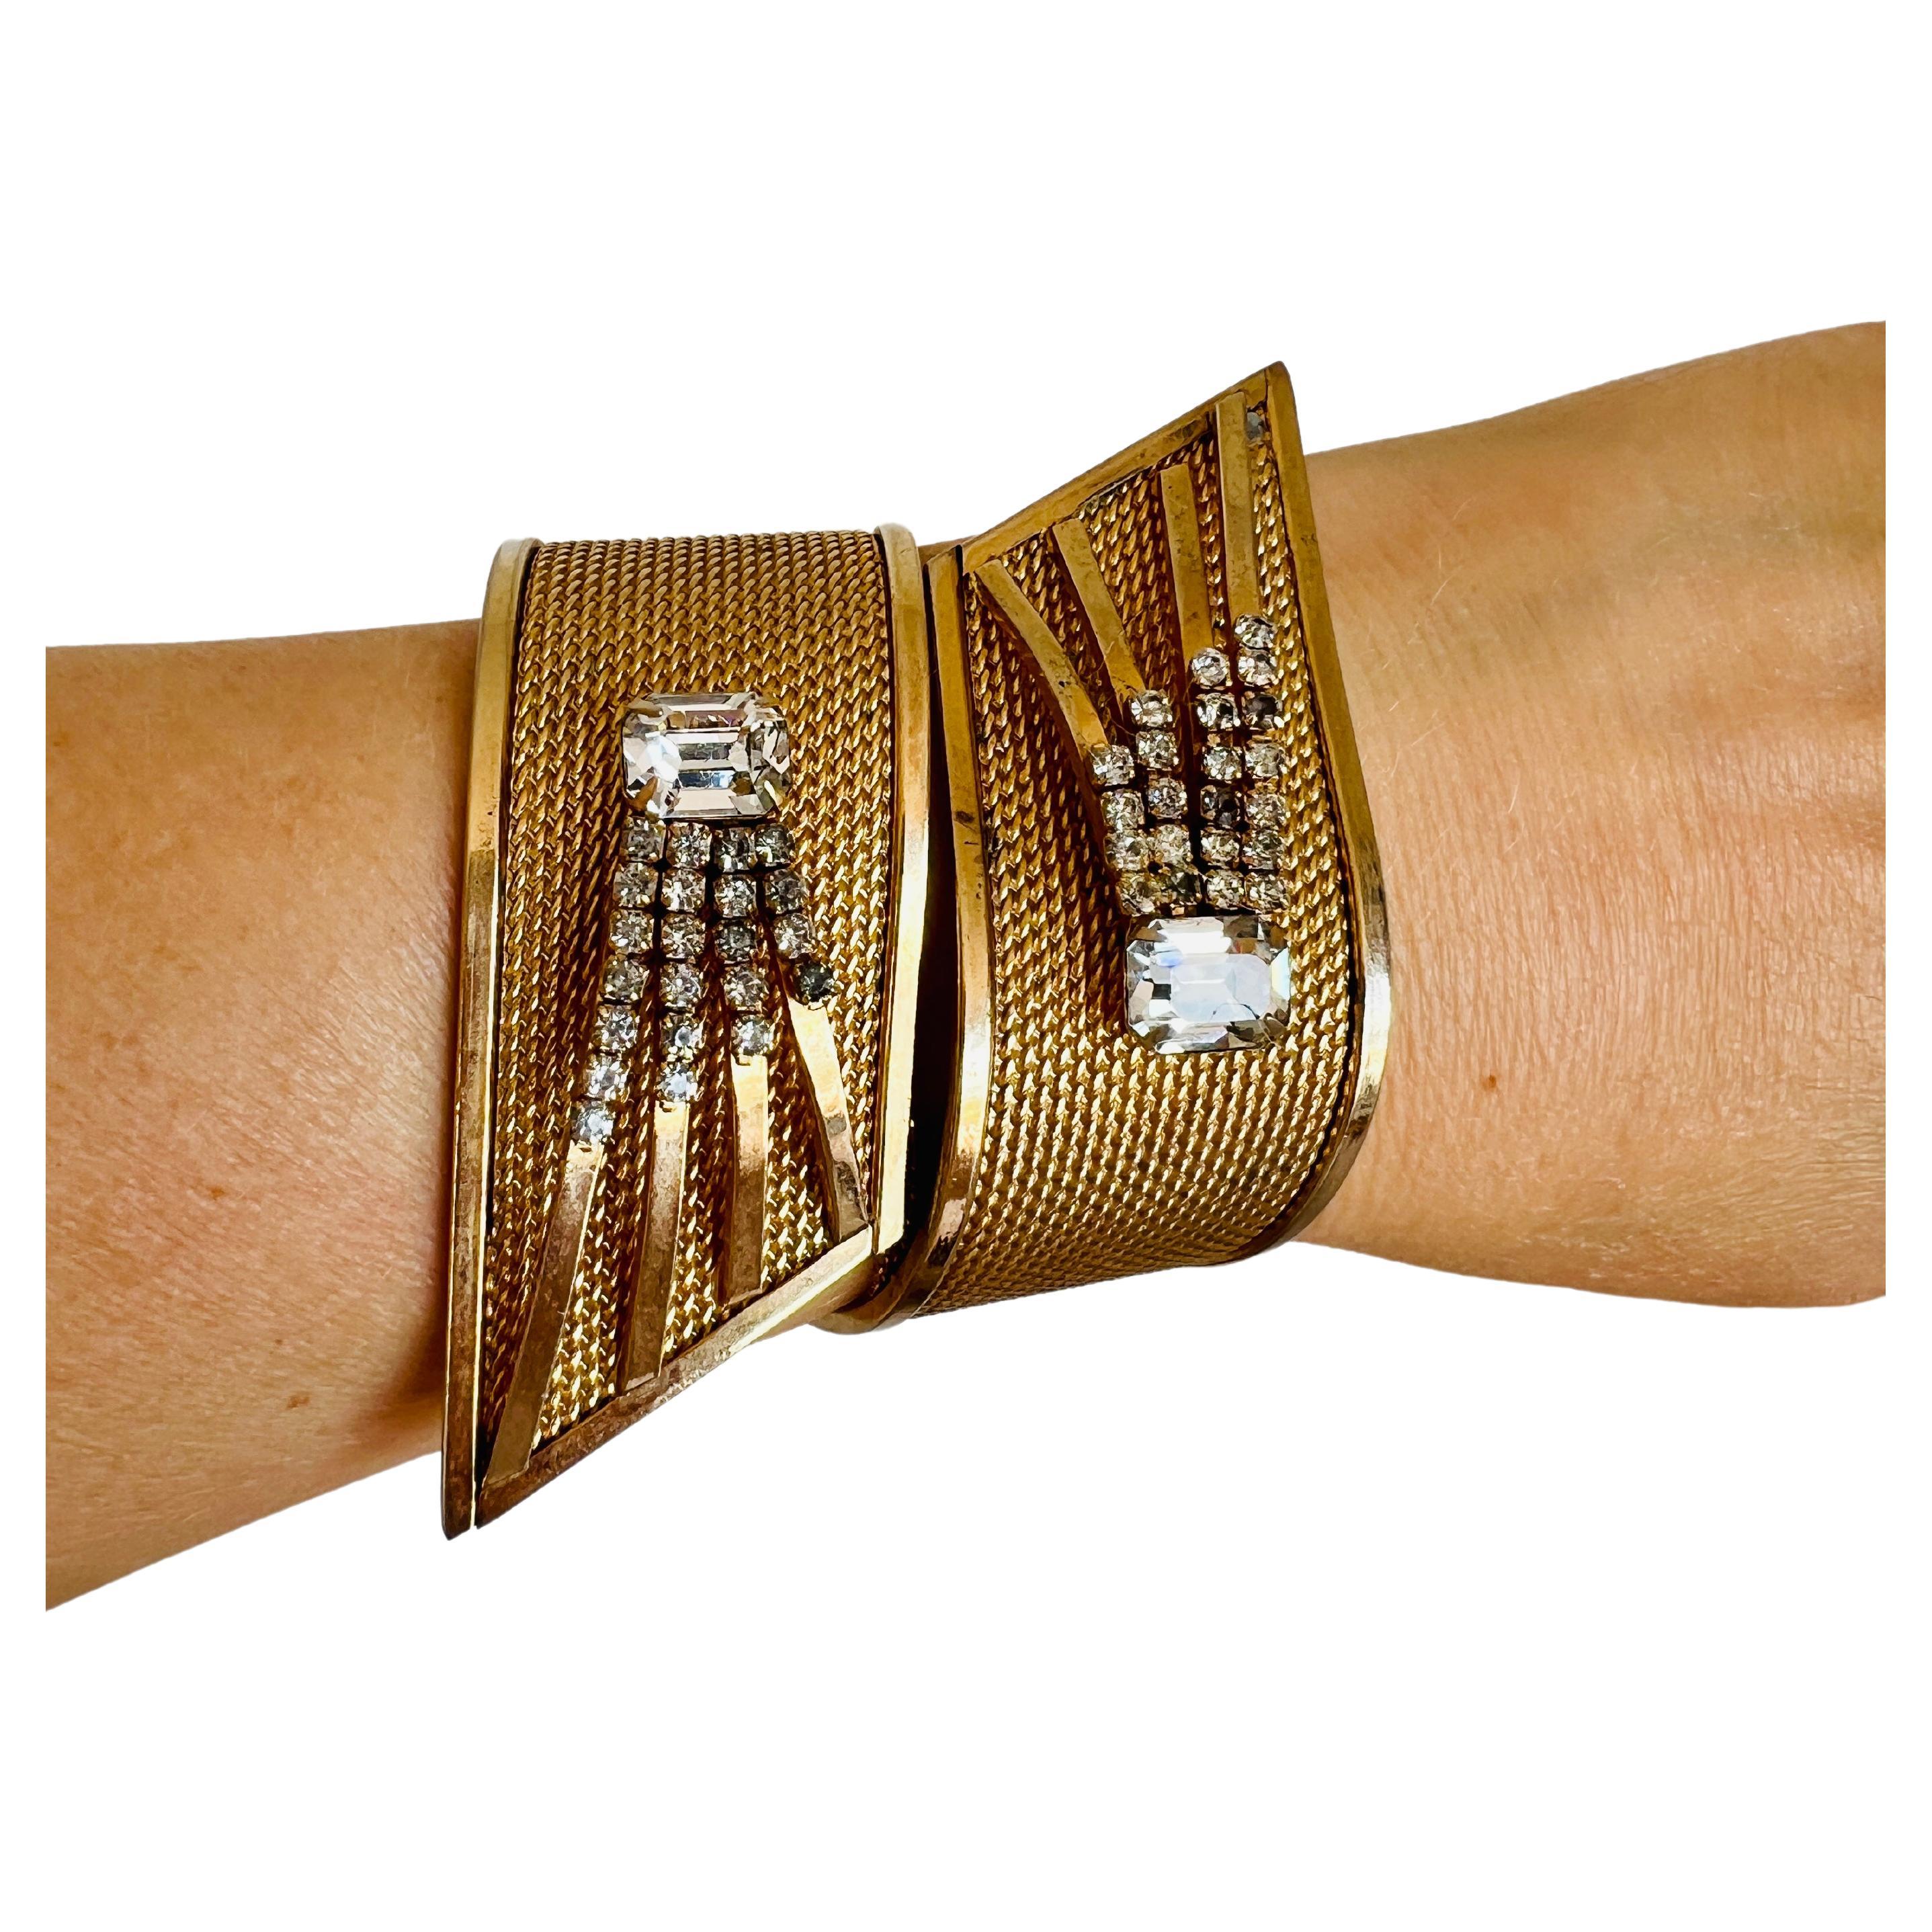 Bracelet à charnière extra large de Vargas des années 1950 présentant un motif en forme d'étoile avec des mailles dorées et des strass clairs sertis. 

Taille : Plus de 2-1/2